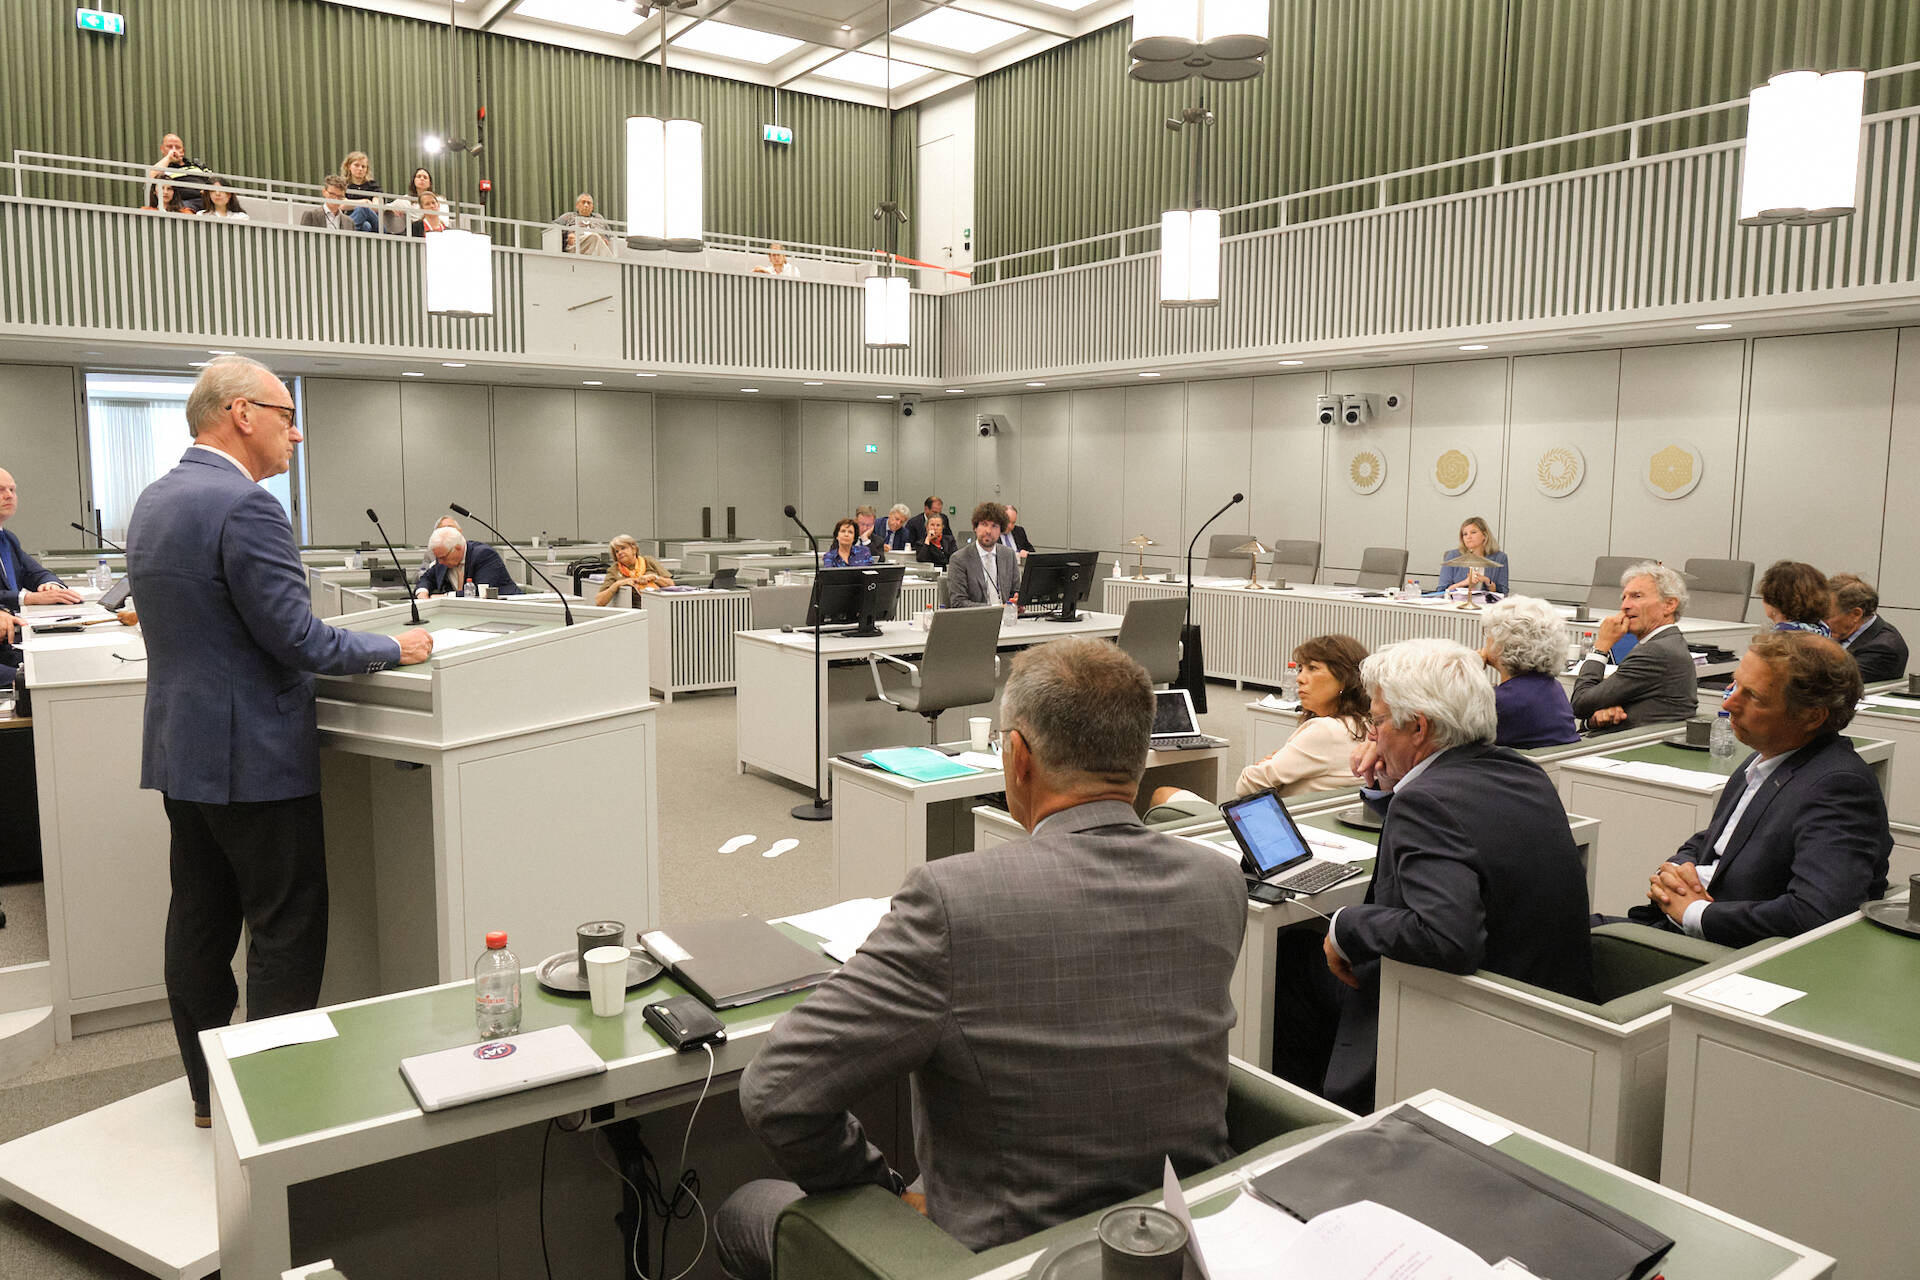 De Eerste Kamer tijdens het debat op 11 juli 2022